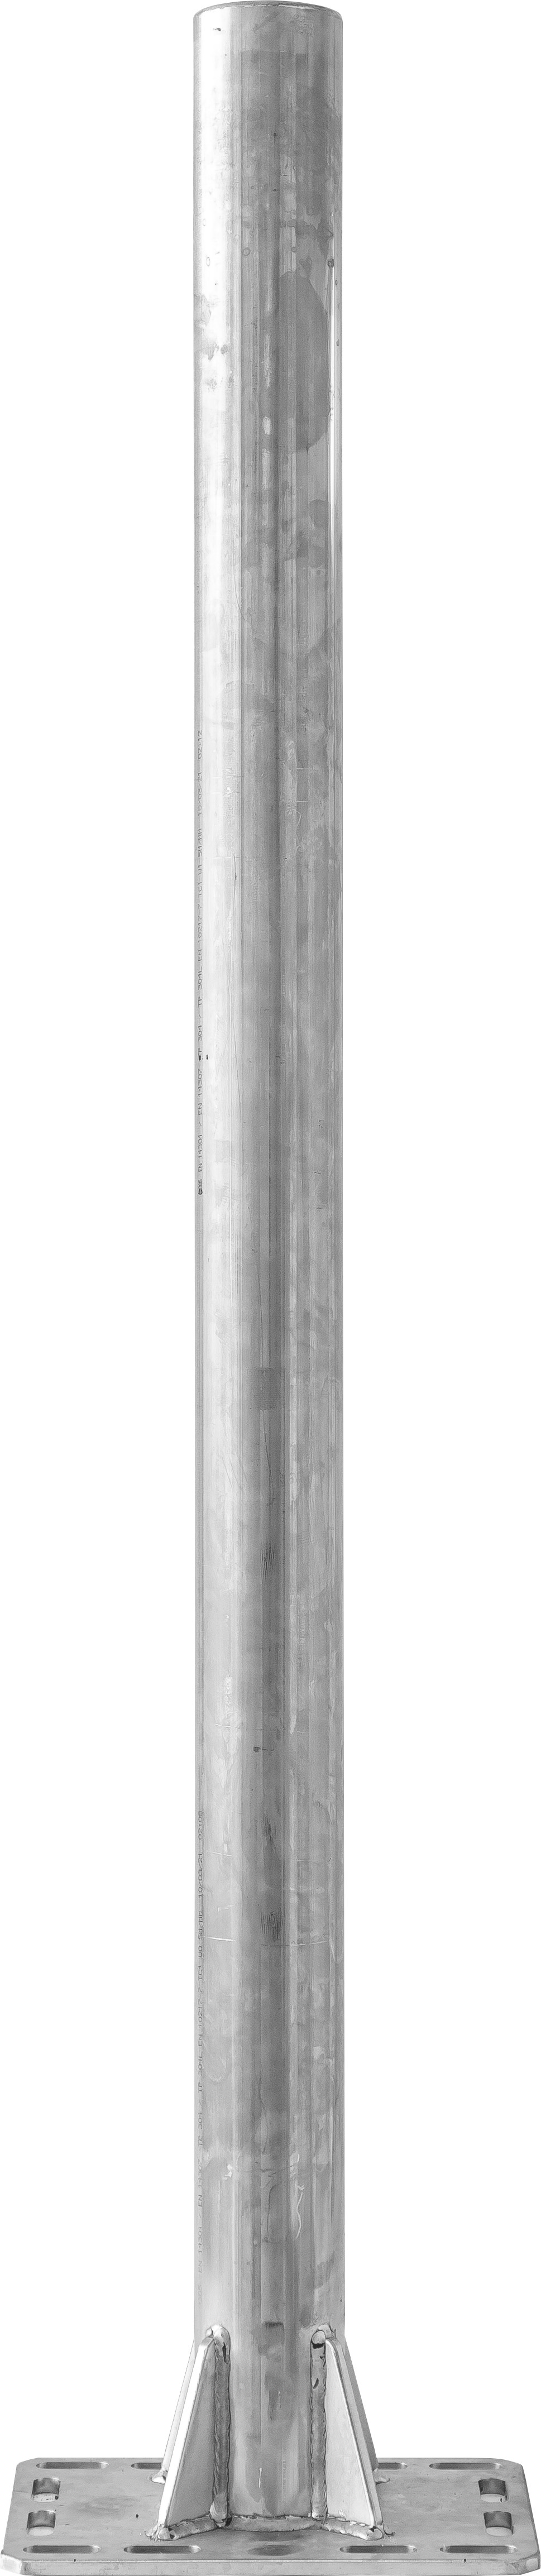 Pfosten Ø 76mm, L=1,65 m, mit Bodenplatte,  für Spaltenboden